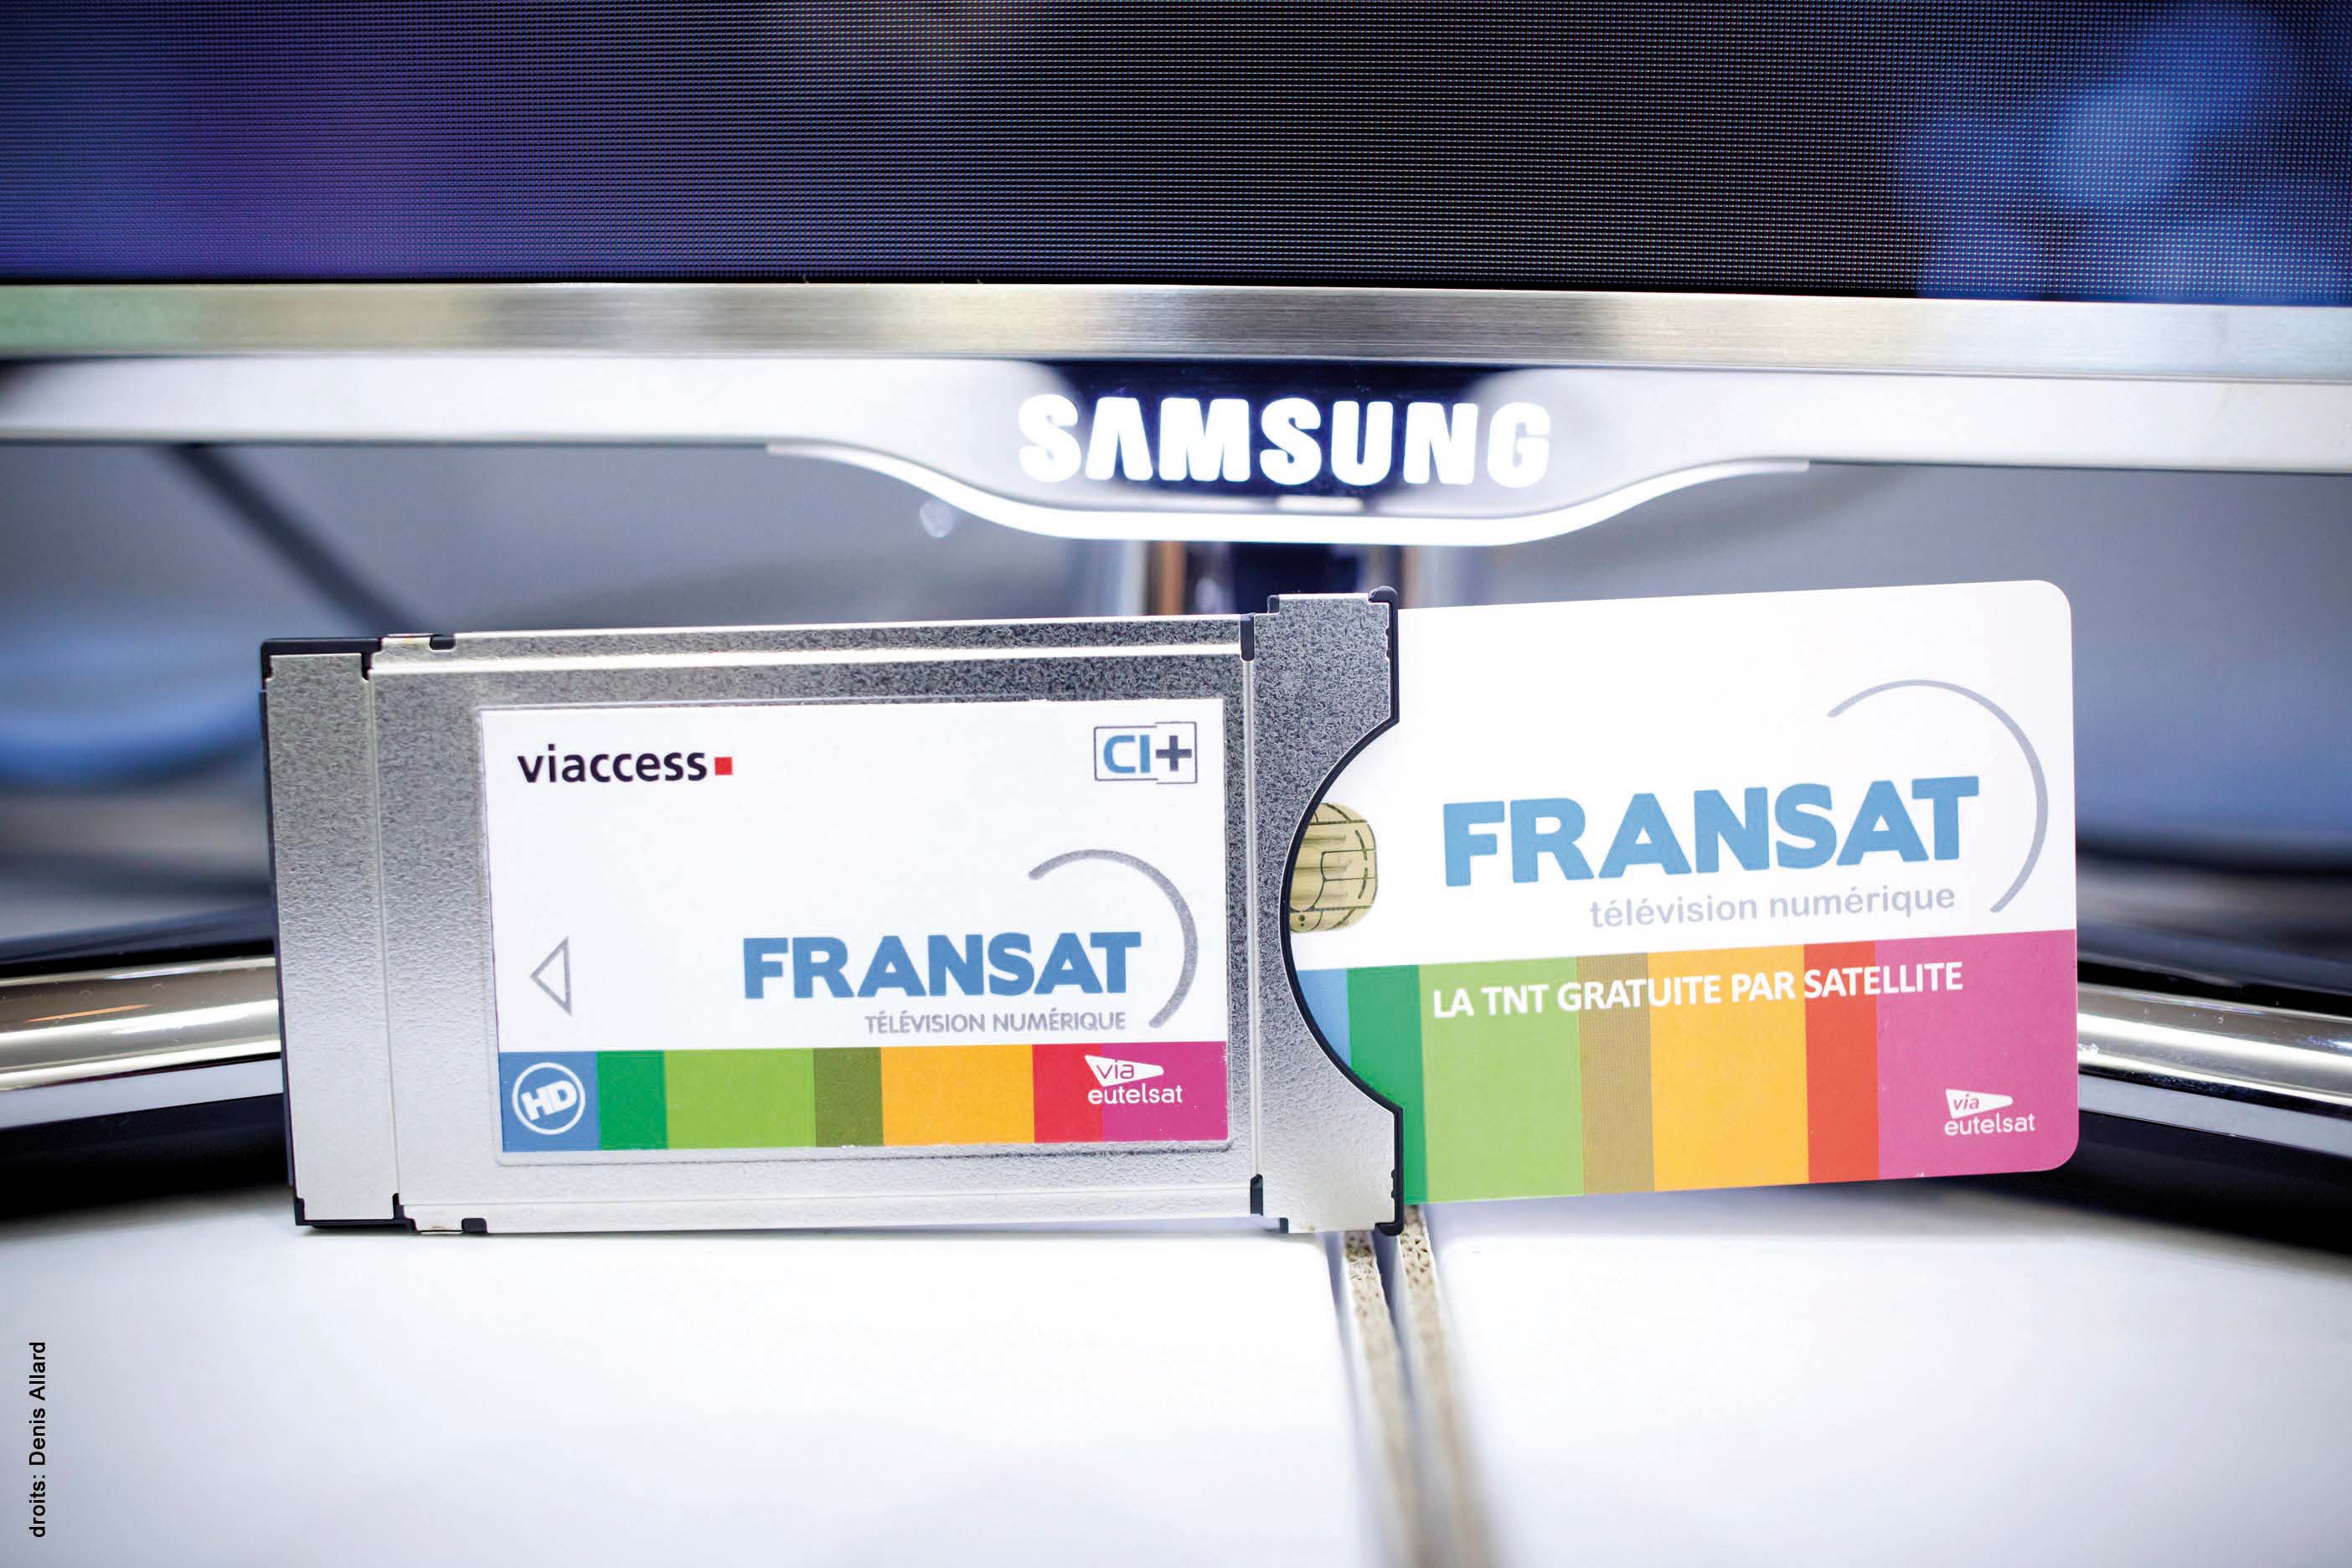 Fransat, Samsung, y Neotion anuncian una importante innovación, en materia de recepción TV Satélite